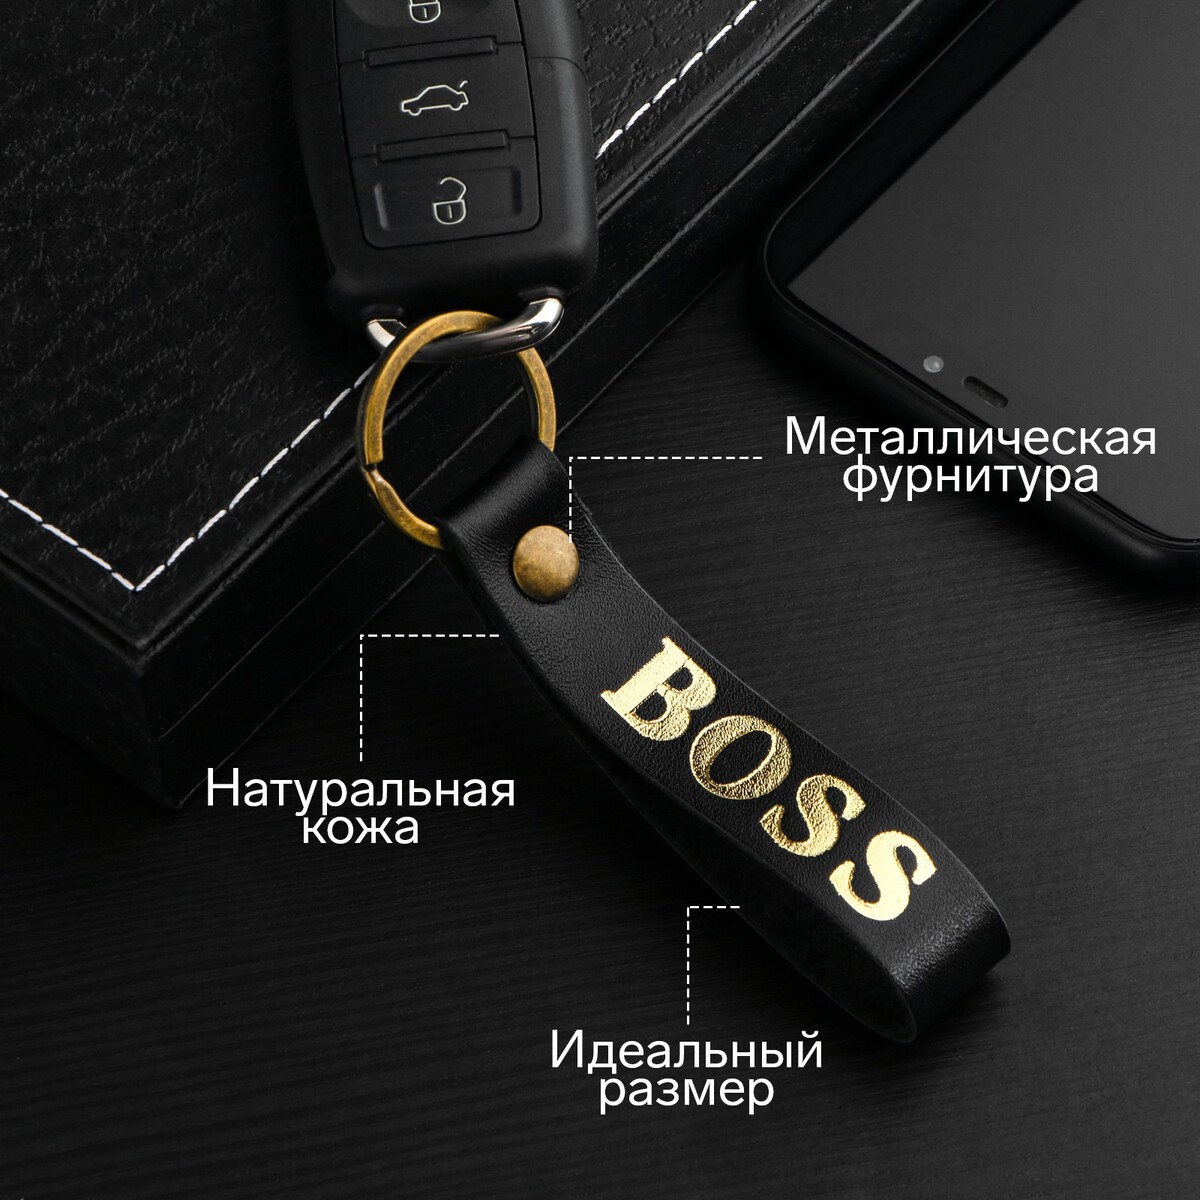 Брелок для автомобильного ключа, ремешок, натуральная кожа, черный, босс No brand 04895343 - фото 1